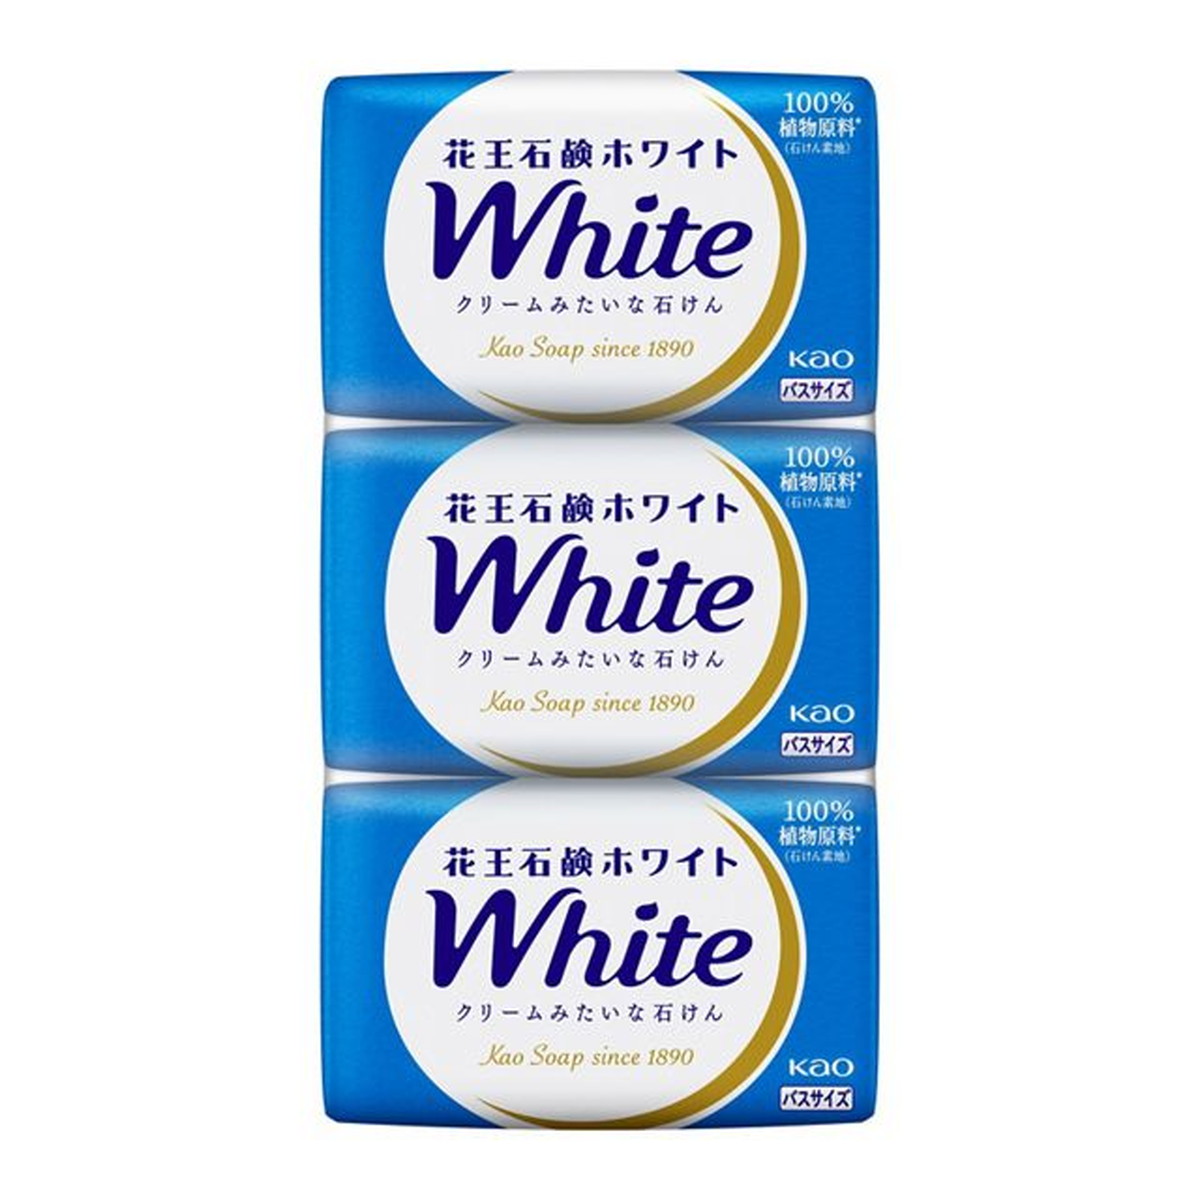 Kao 花王石鹸ホワイト ホワイトフローラルの香り バスサイズ 130g 3コパック×5 花王石鹸ホワイト バスソープ、石鹸の商品画像